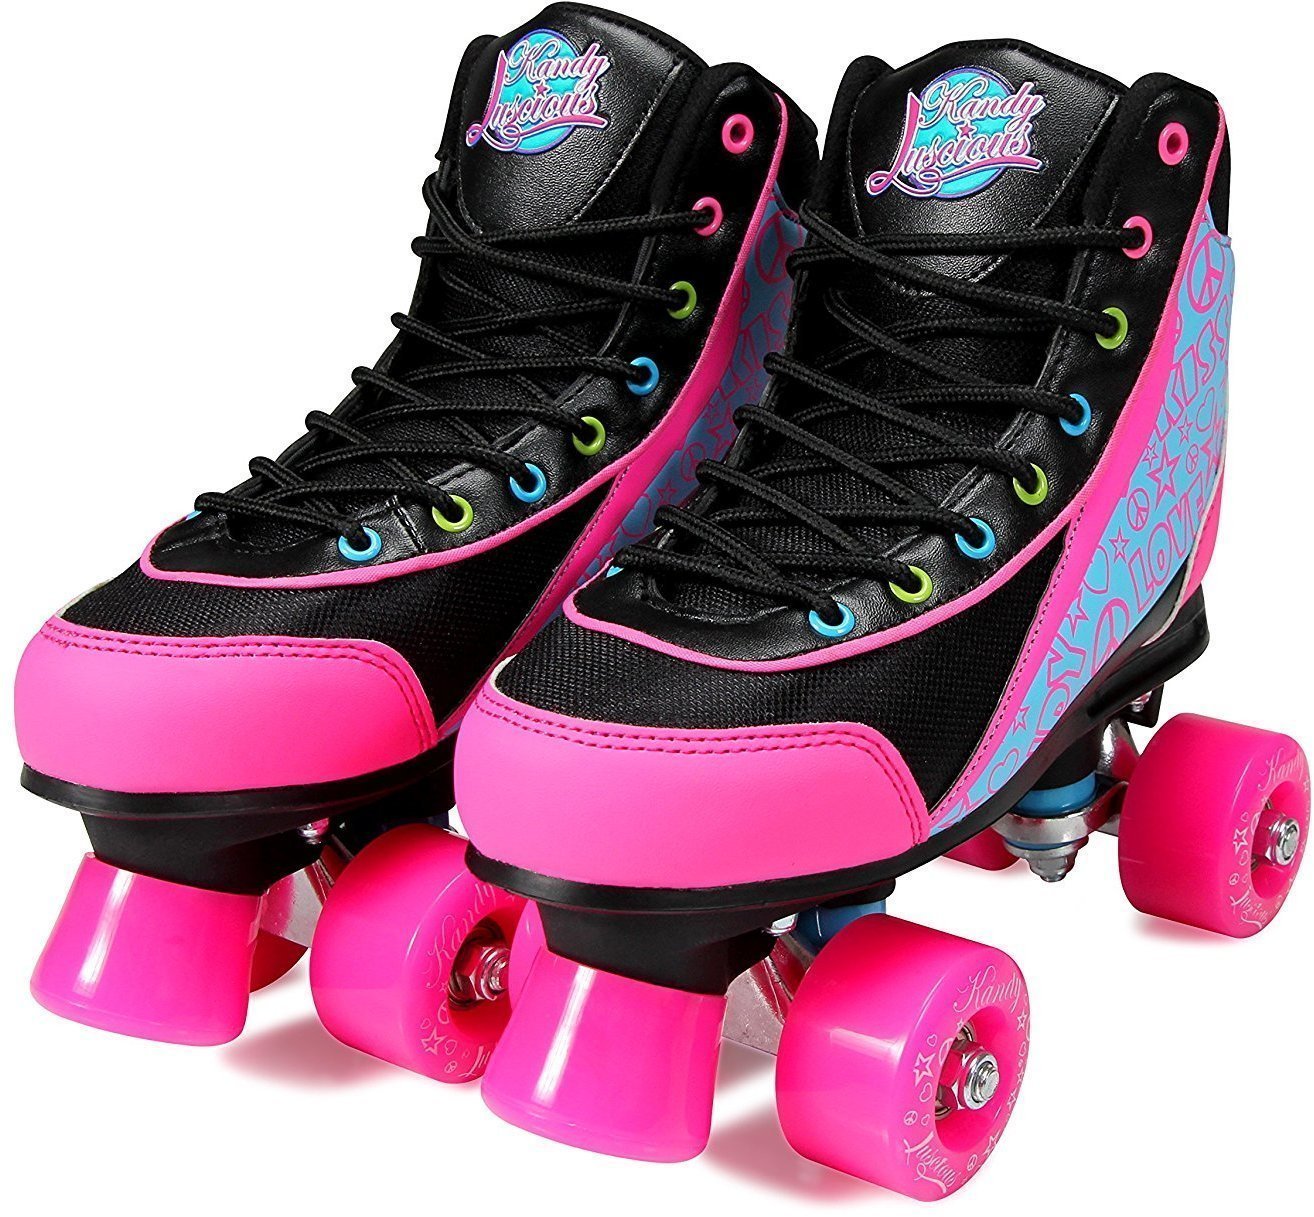 Patins em linha Luscious Skates Disco Diva 37 Black/Pink